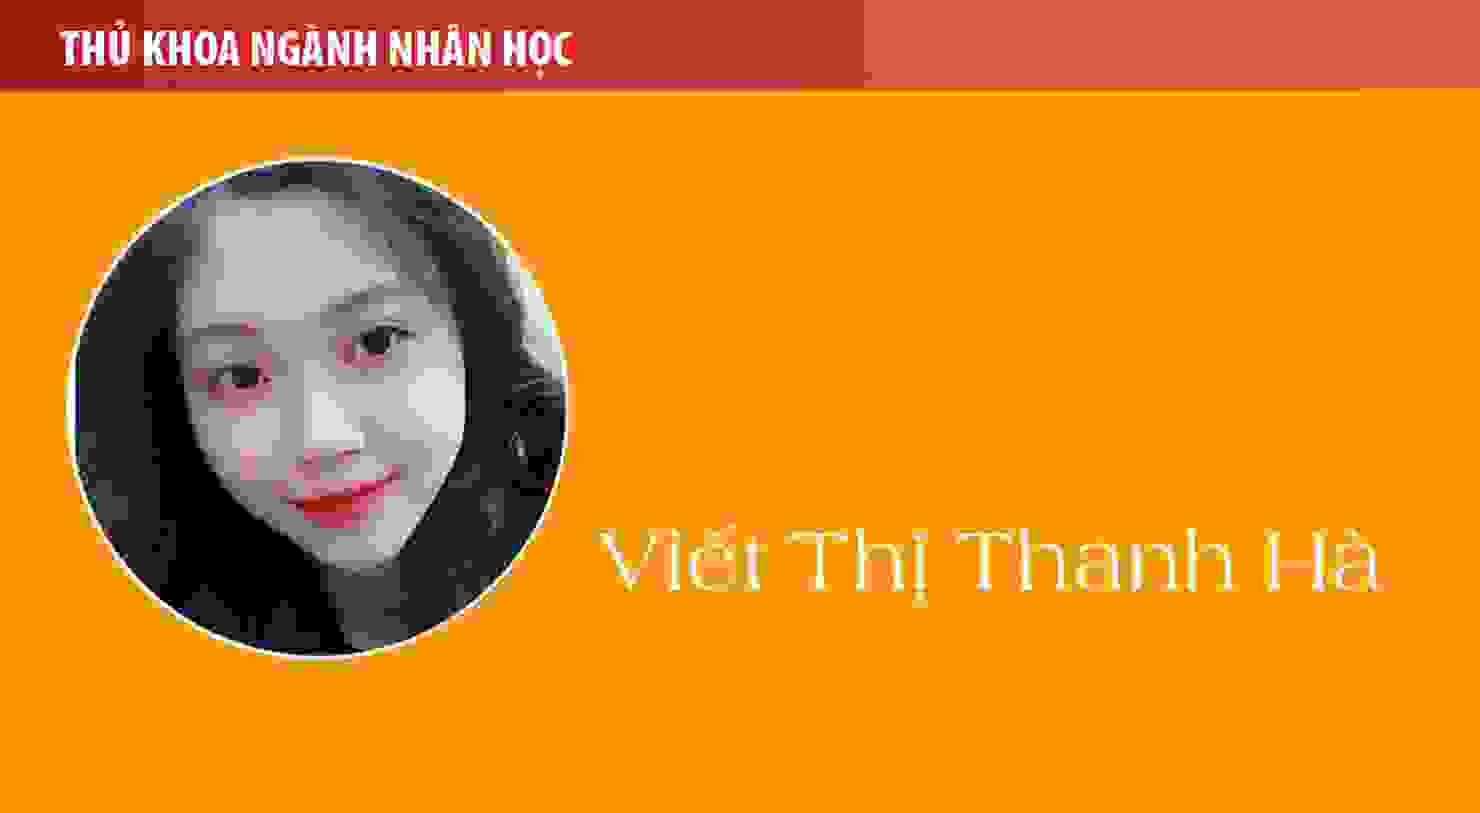 Thủ khoa Viết Thị Thanh Hà (ngành Nhân học): Hãy chọn ngành nghề mà mình đam mê